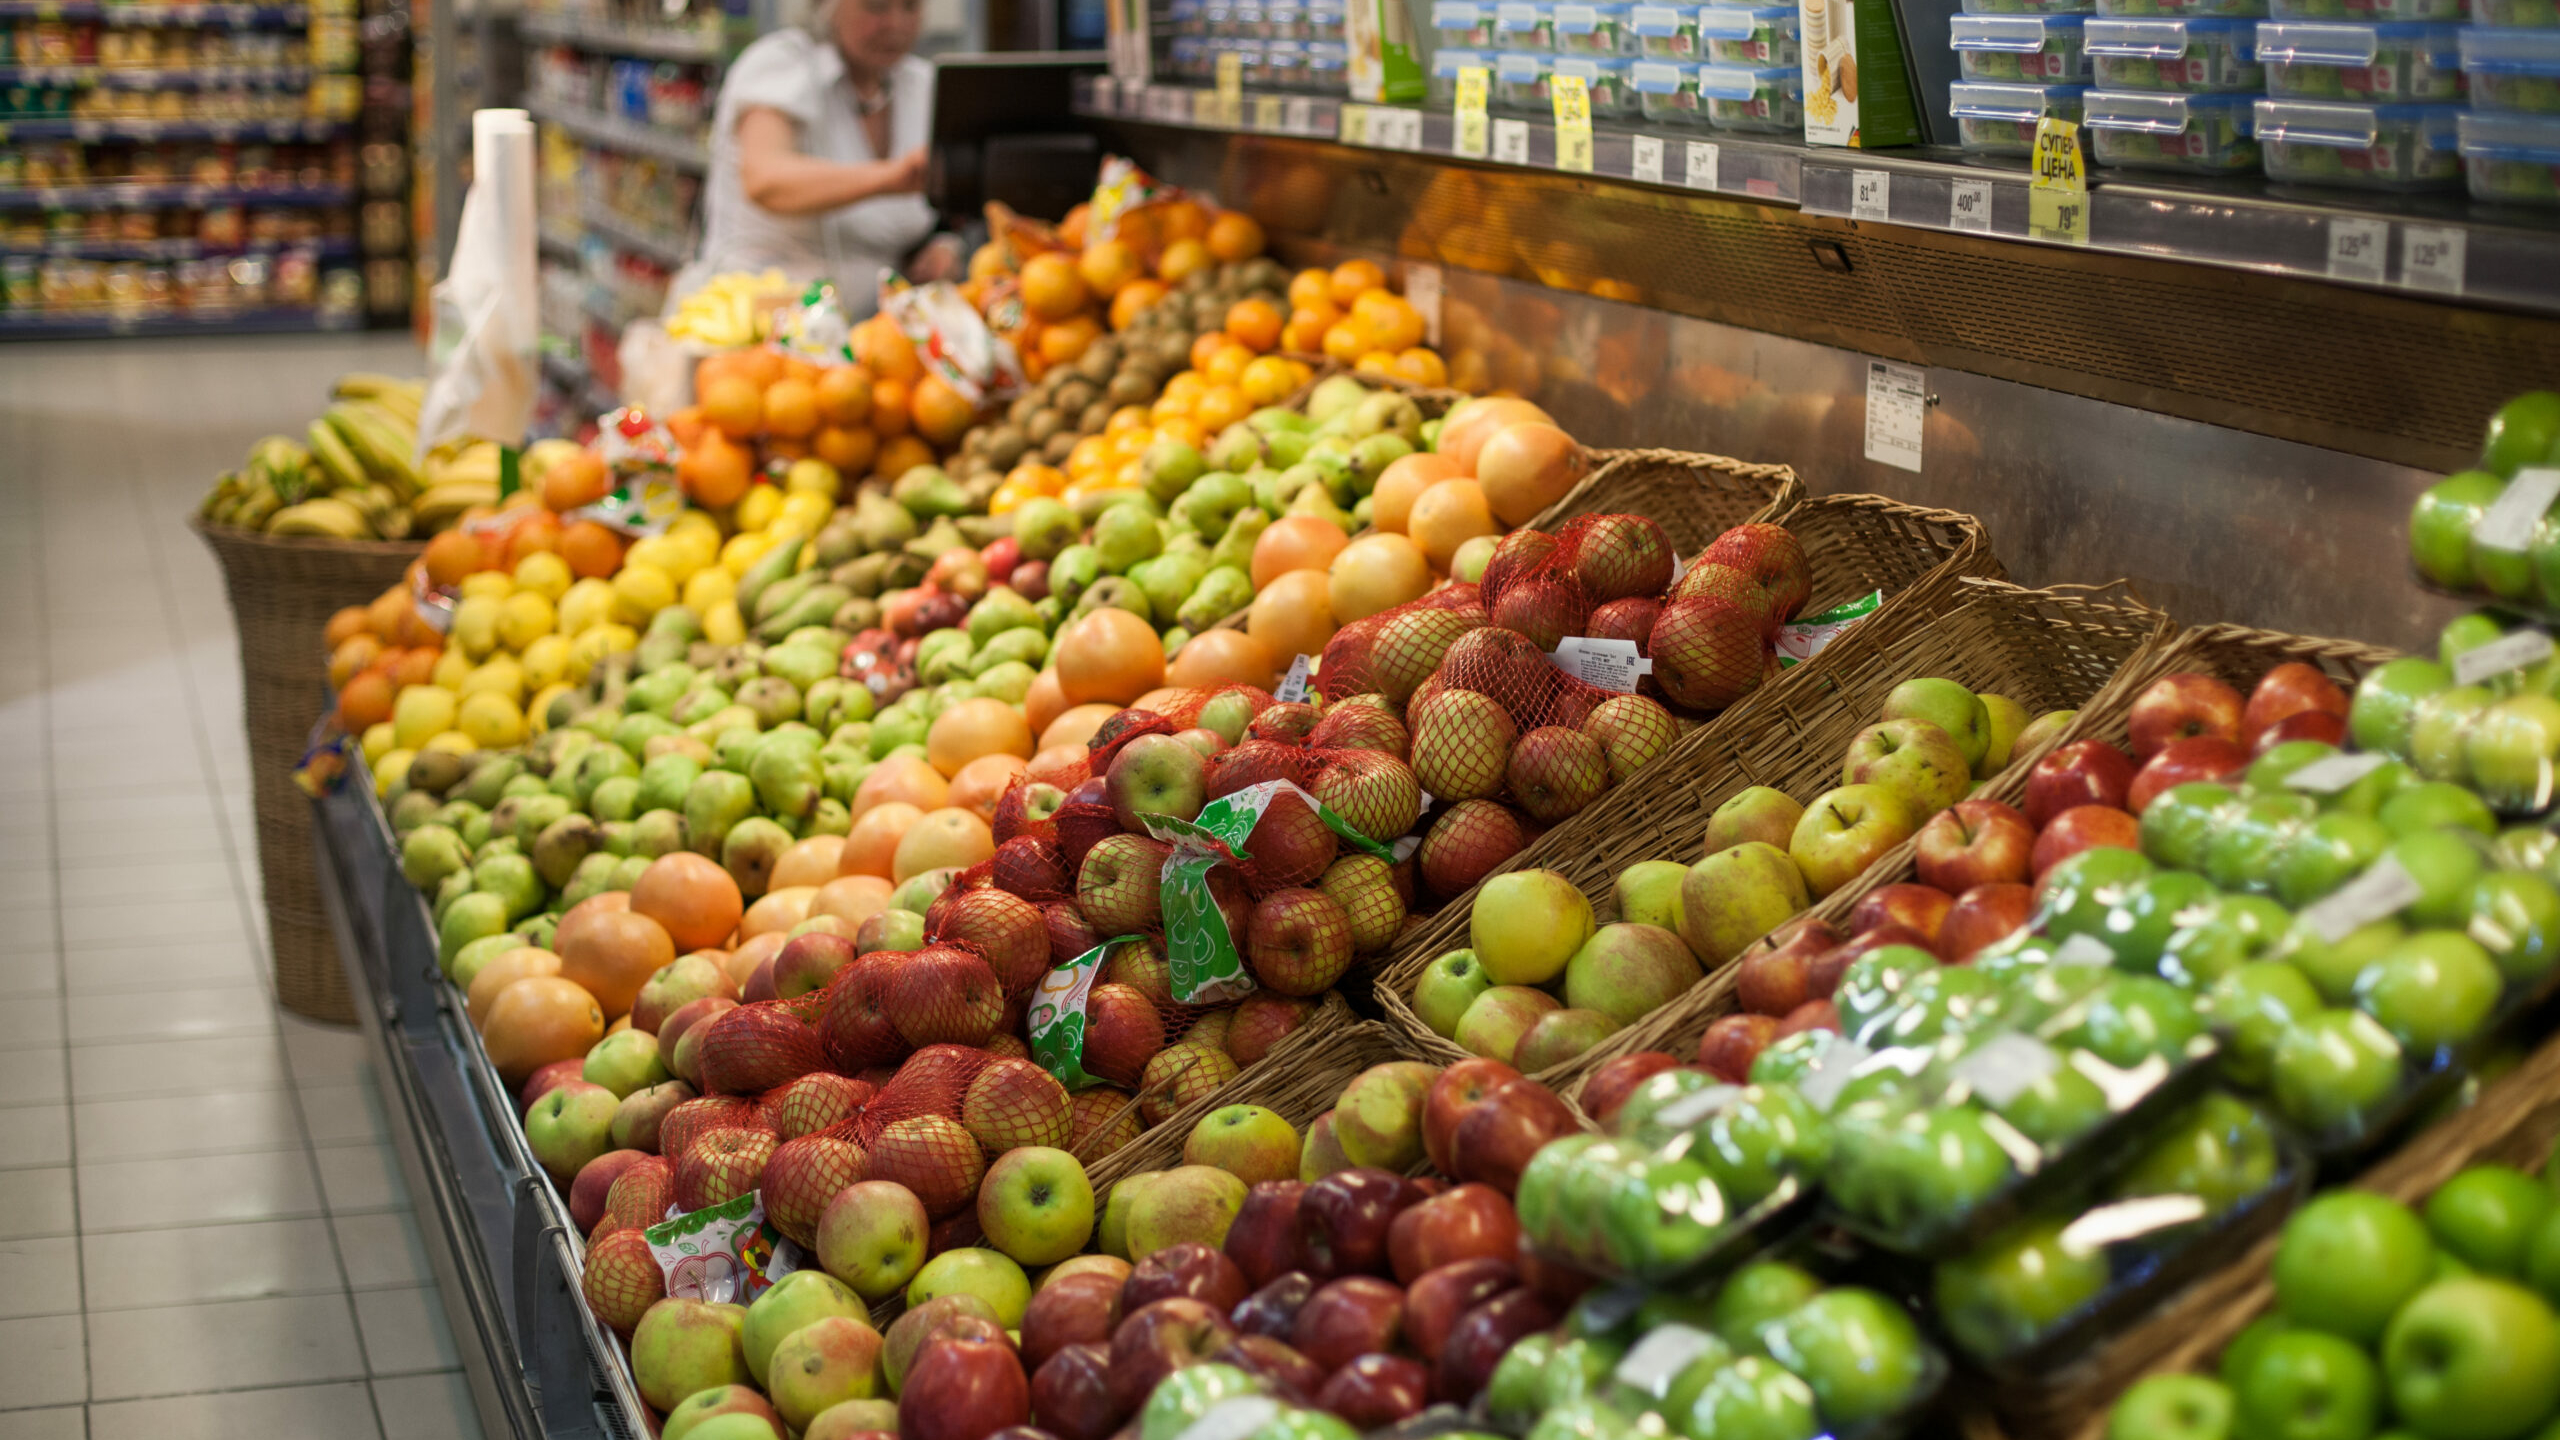 Аналитик назвал дату снижения цен на продукты в российских магазинах